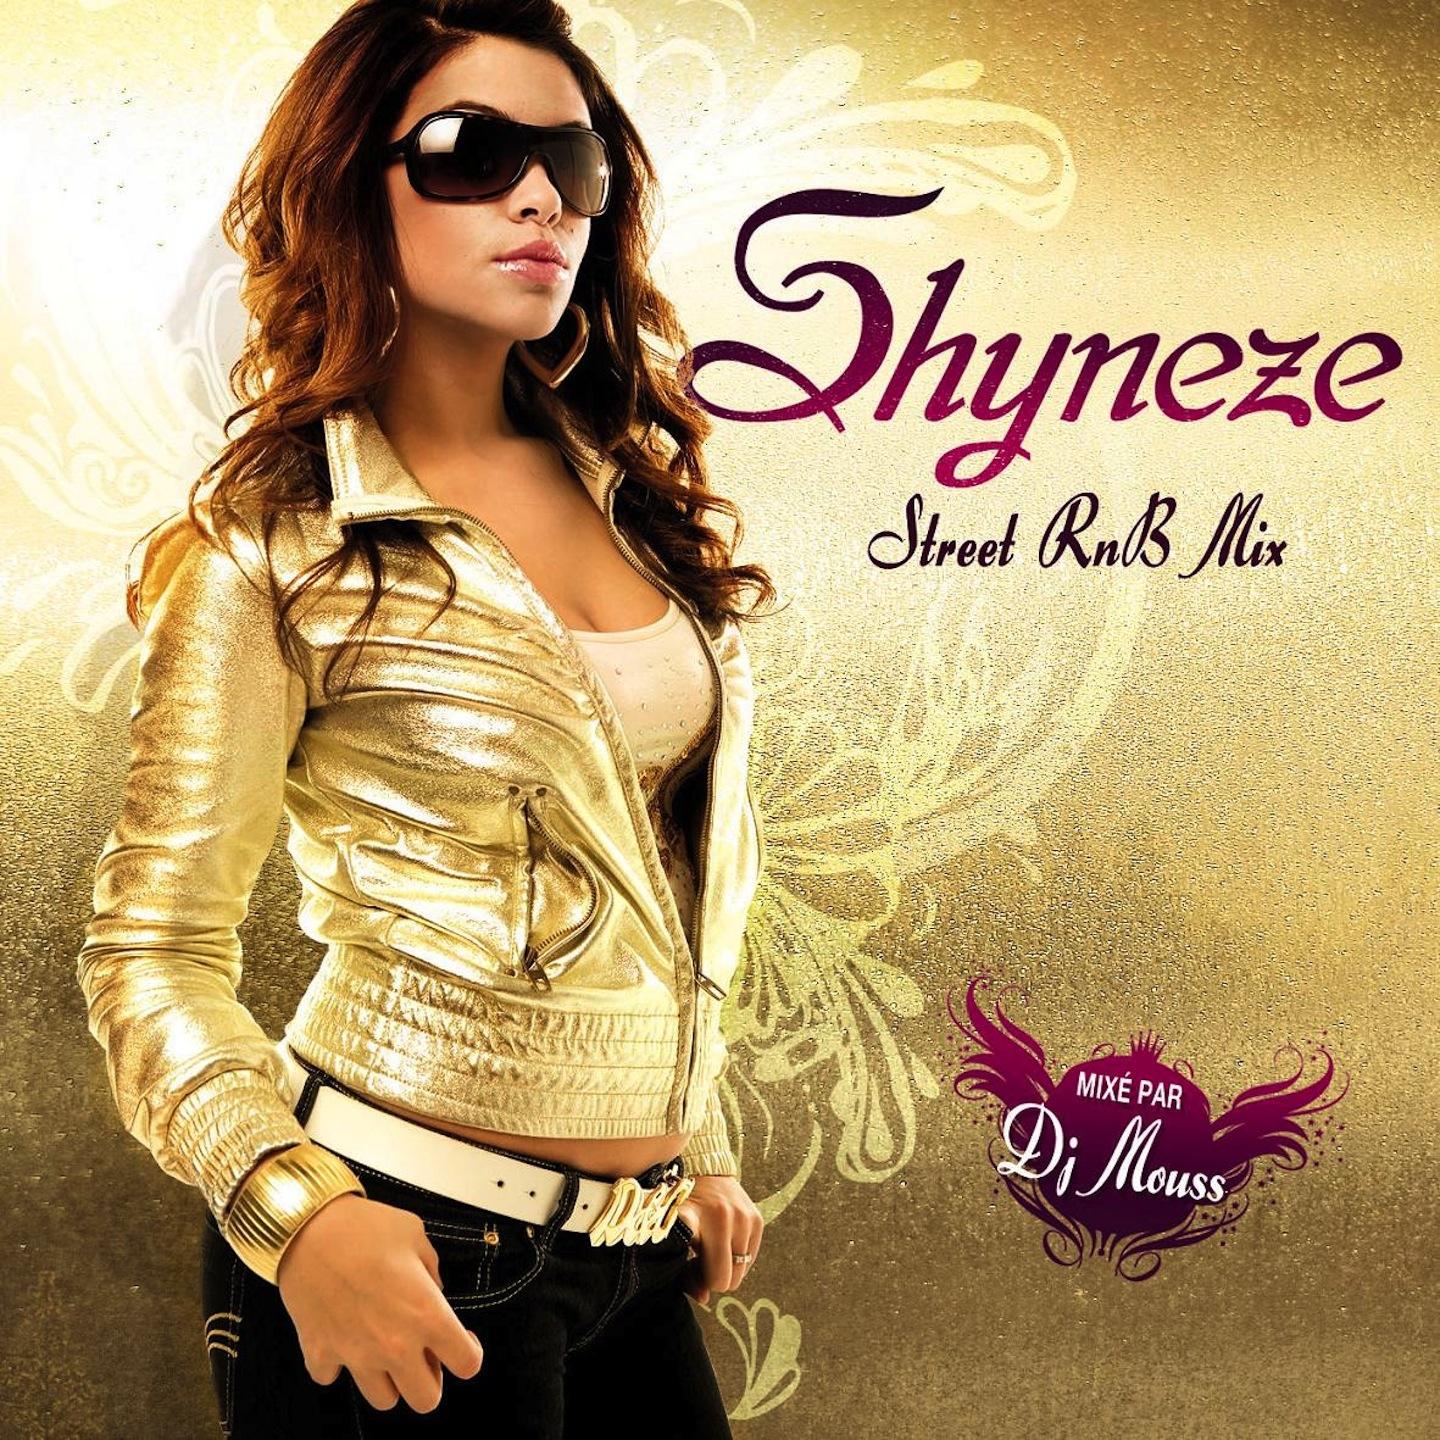 Shyneze Street R' n' B Mix Mixe par DJ Mouss